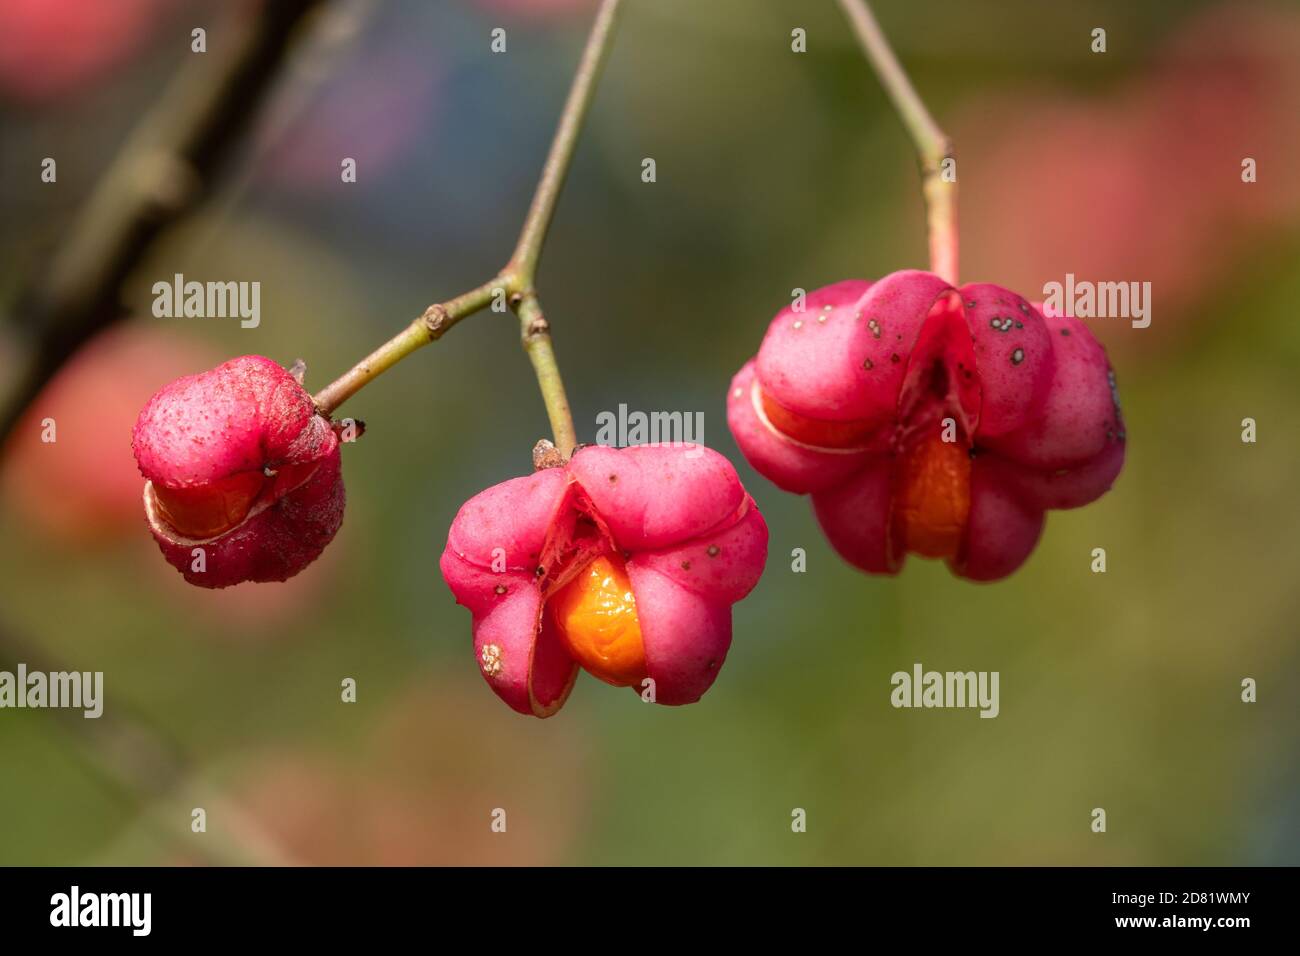 Primer plano de las bayas del huso de colores brillantes, frutos rosas y naranjas del árbol del huso (Euonymus europaeus) Foto de stock